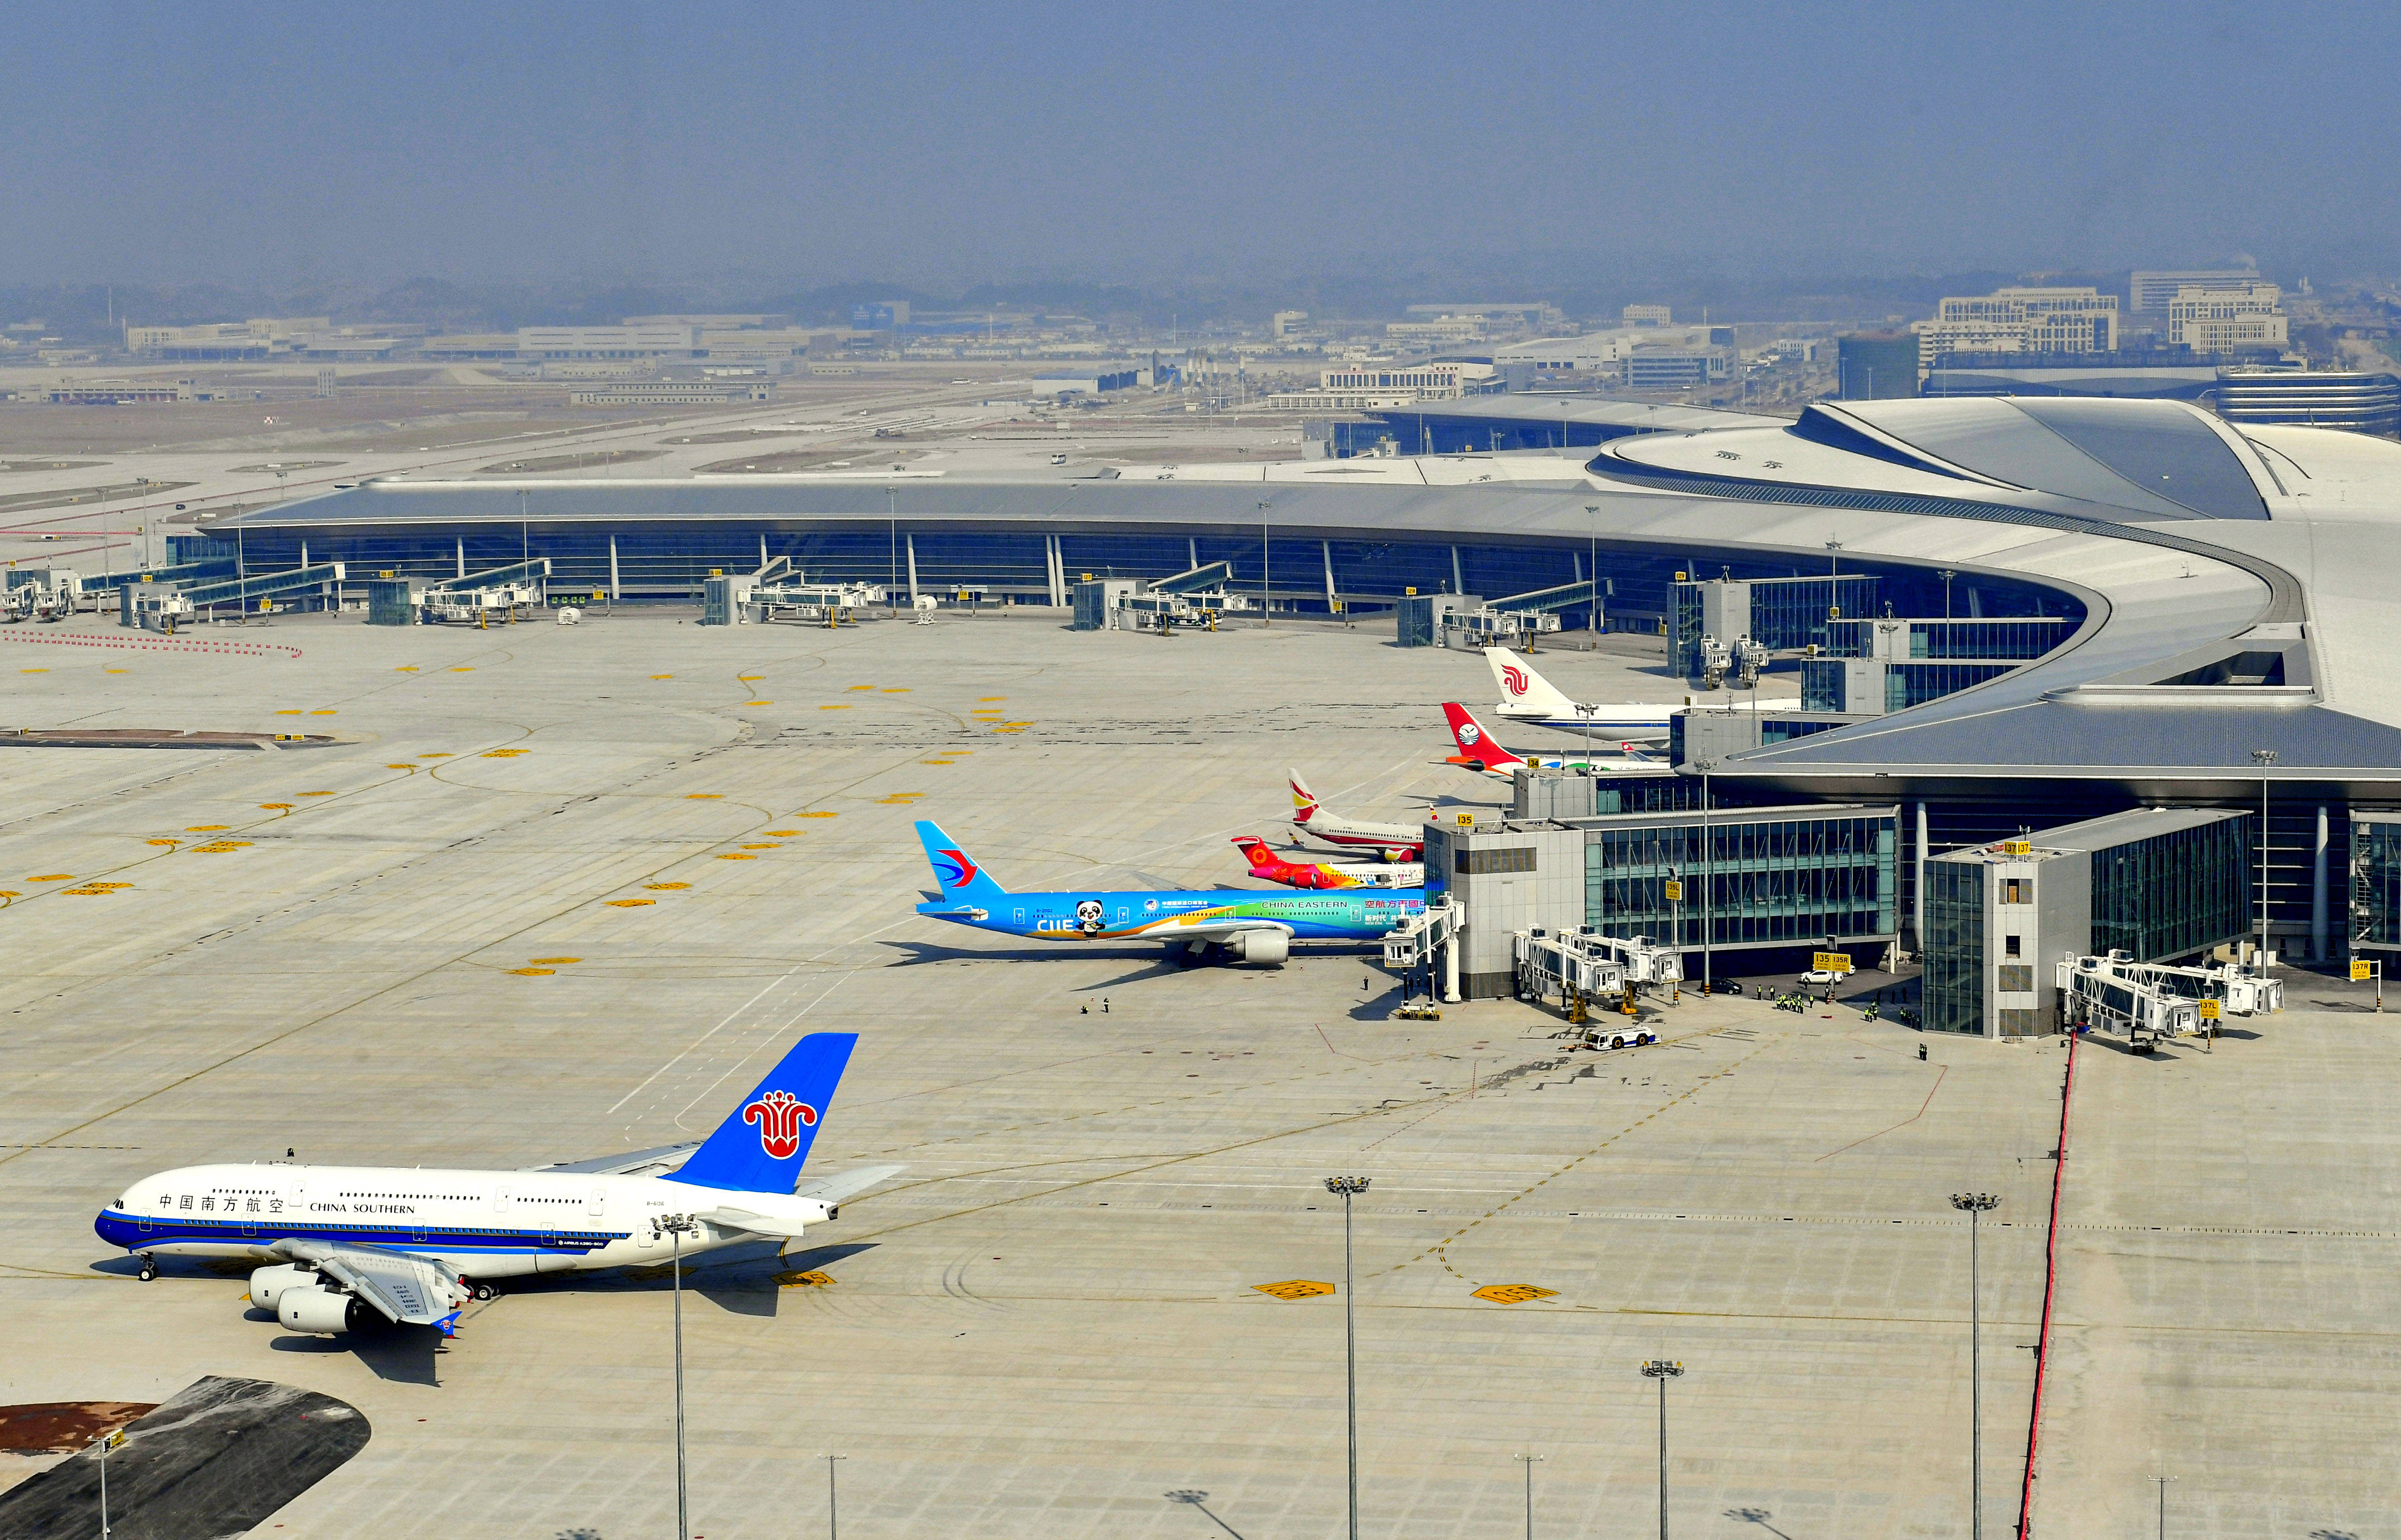 成都天府国际机场是我国"十三五"期间规划建设的最大民用运输机场